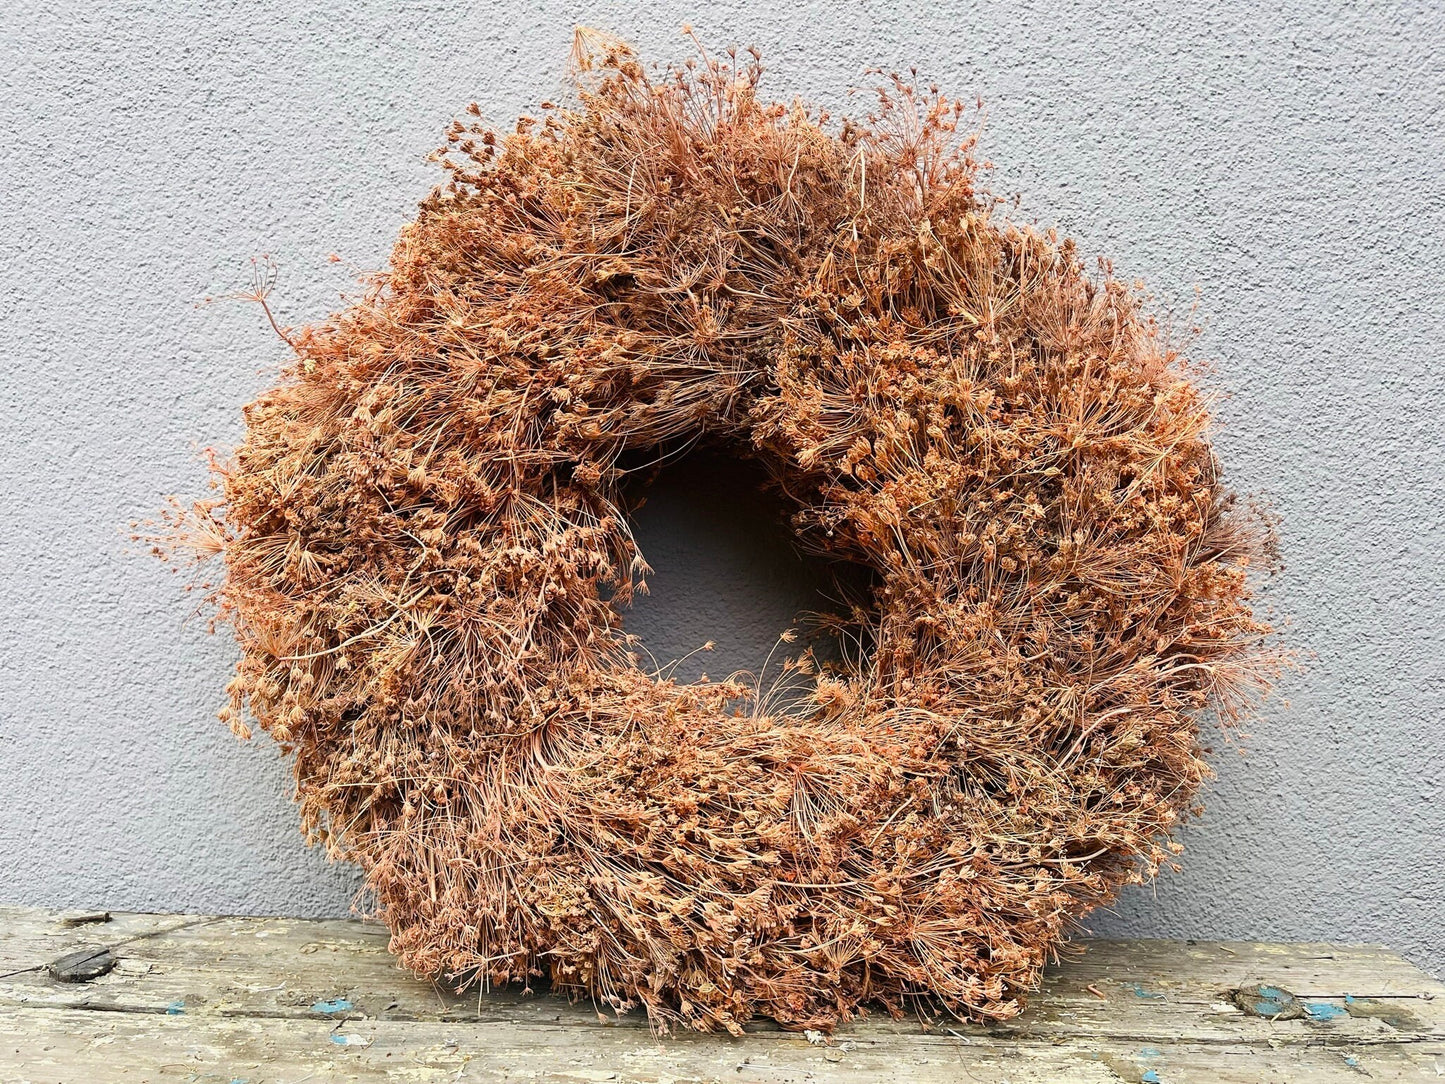 Trockenblumenkranz aus Dillblüten mit 50 cm Durchmesser, Kranz Türkranz Wandkranz